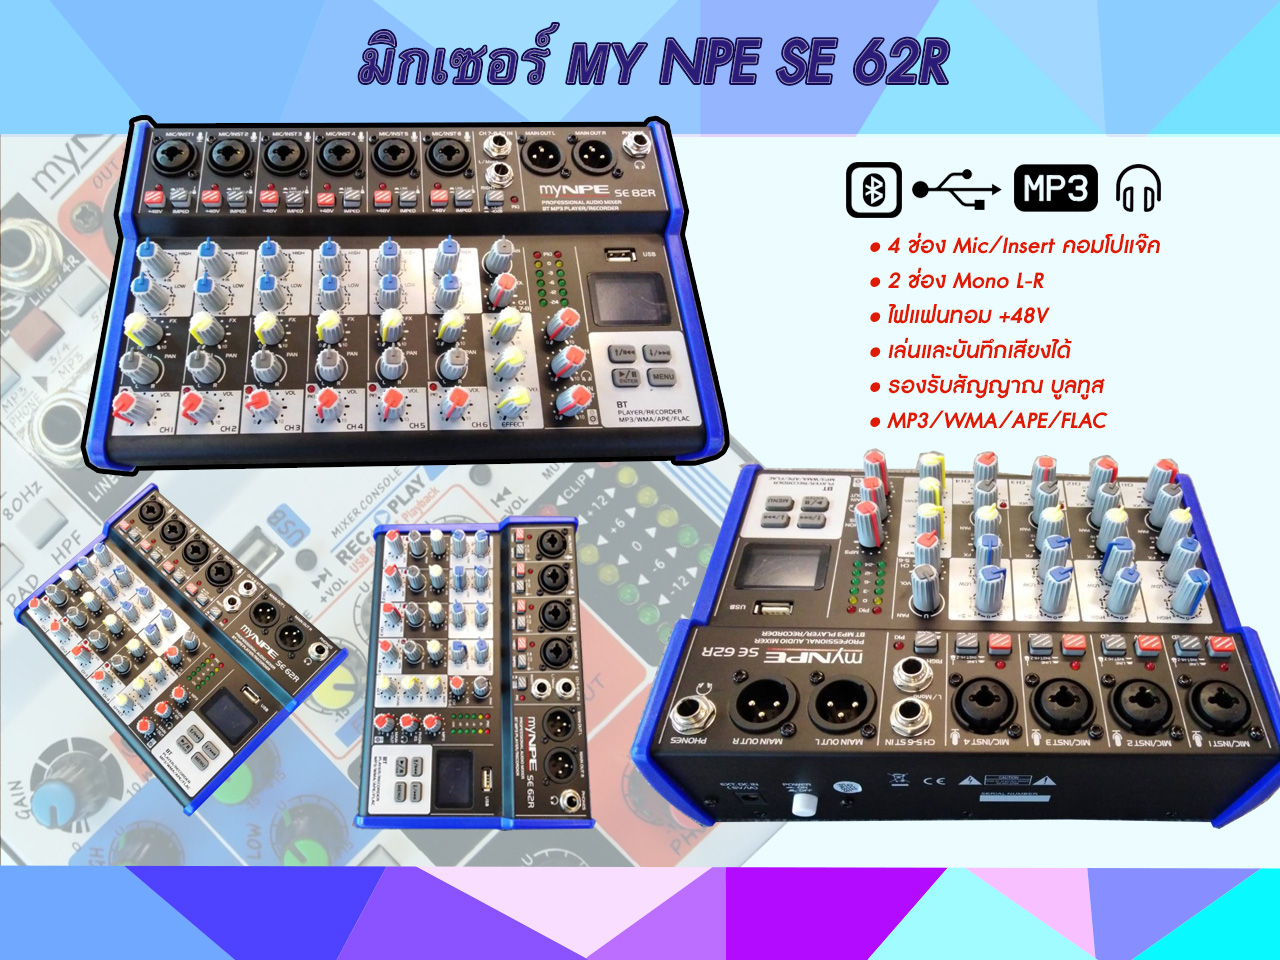 มิกเซอร์ Mixer MyNPE รุ่นSE-62R 4ช่อง Mic/Insert คอมโปแจ๊ค 2 ช่อง Mono L-R ไฟแฟนทอม +48V สินค้ามีพร้อมส่ง